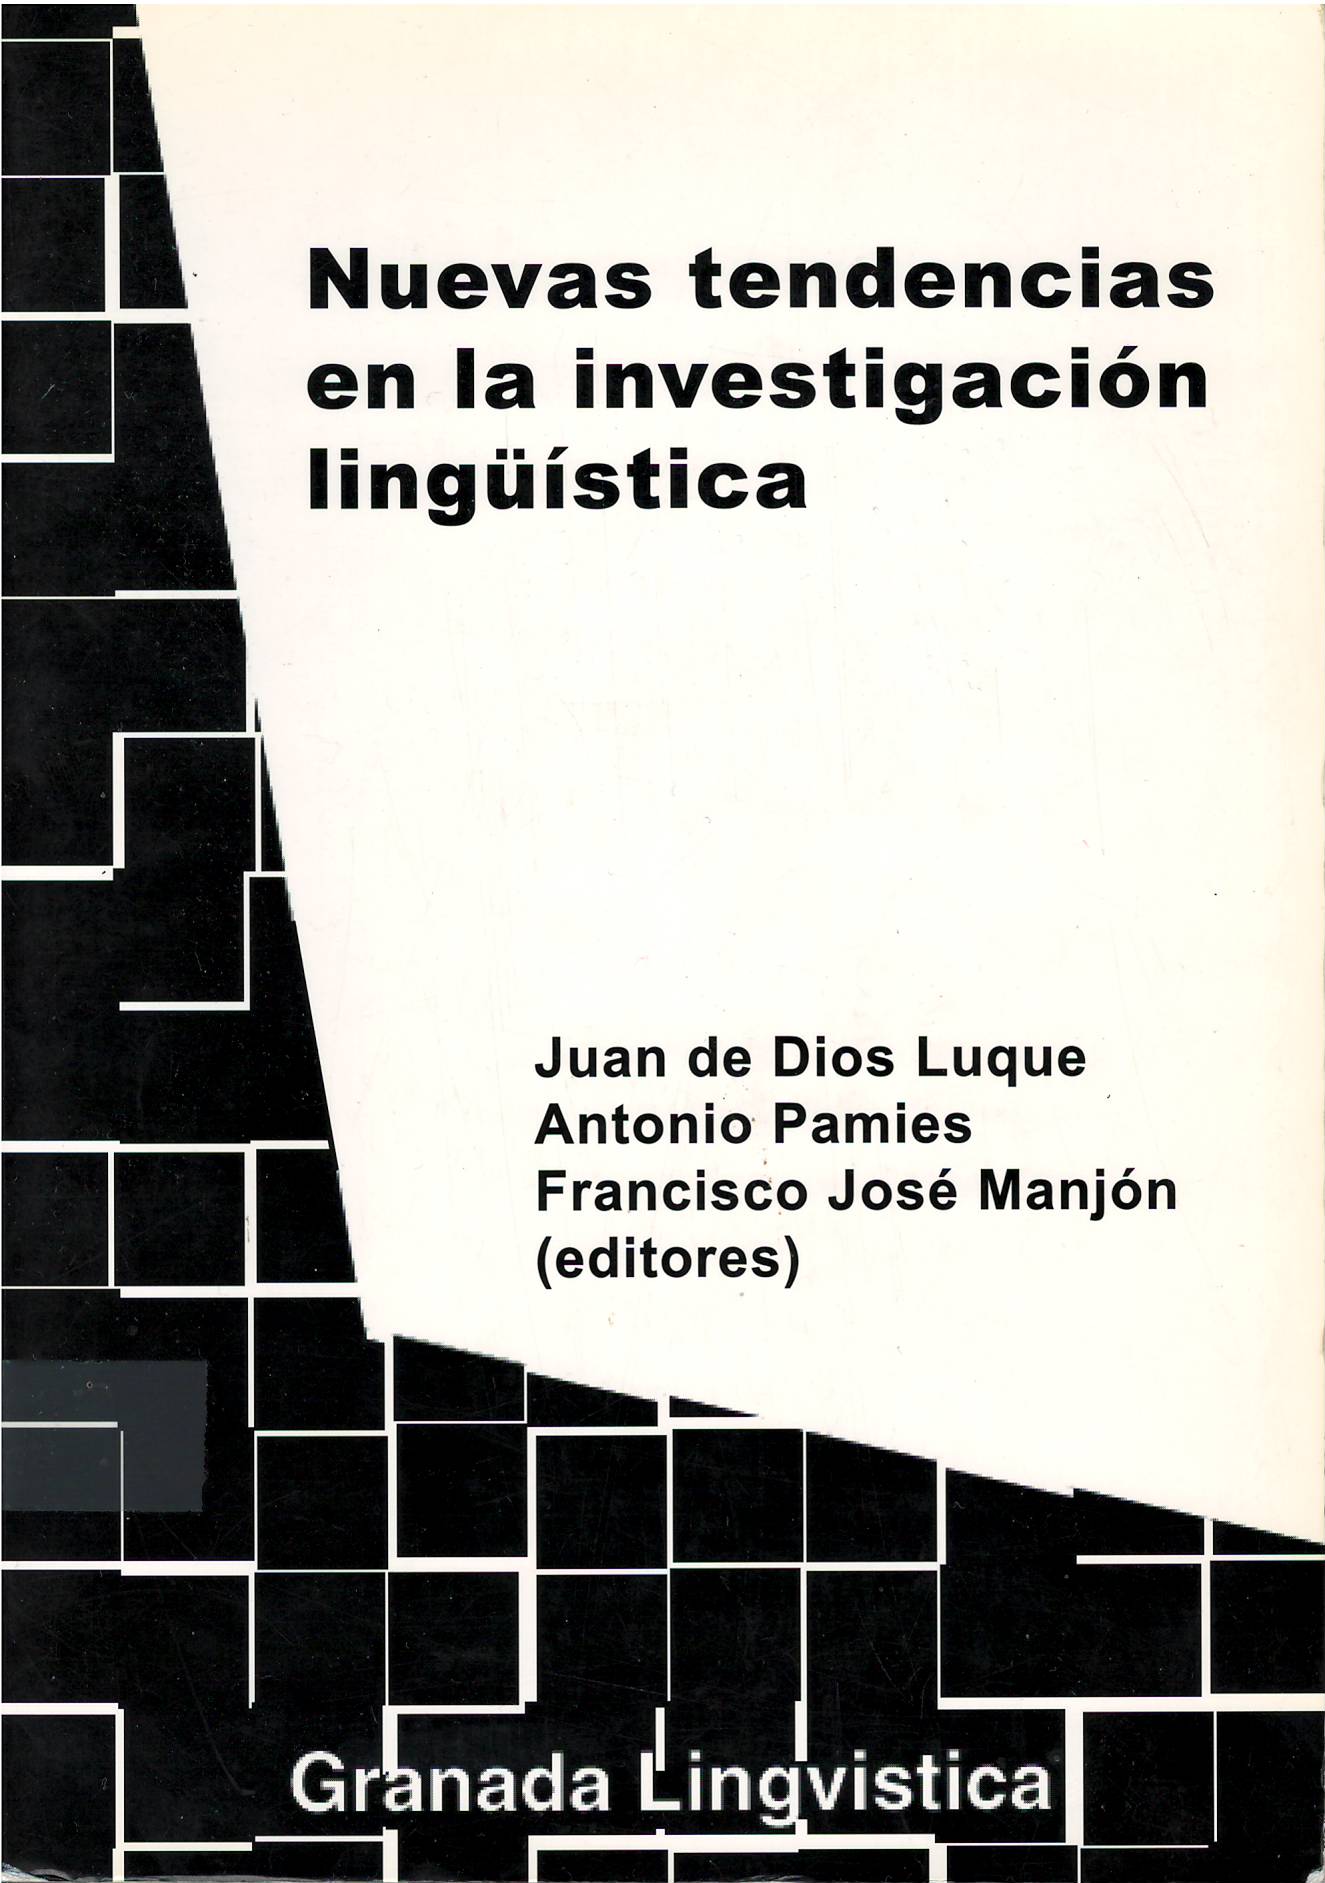 Imagen de portada del libro Nuevas tendencias en la investigación lingüística